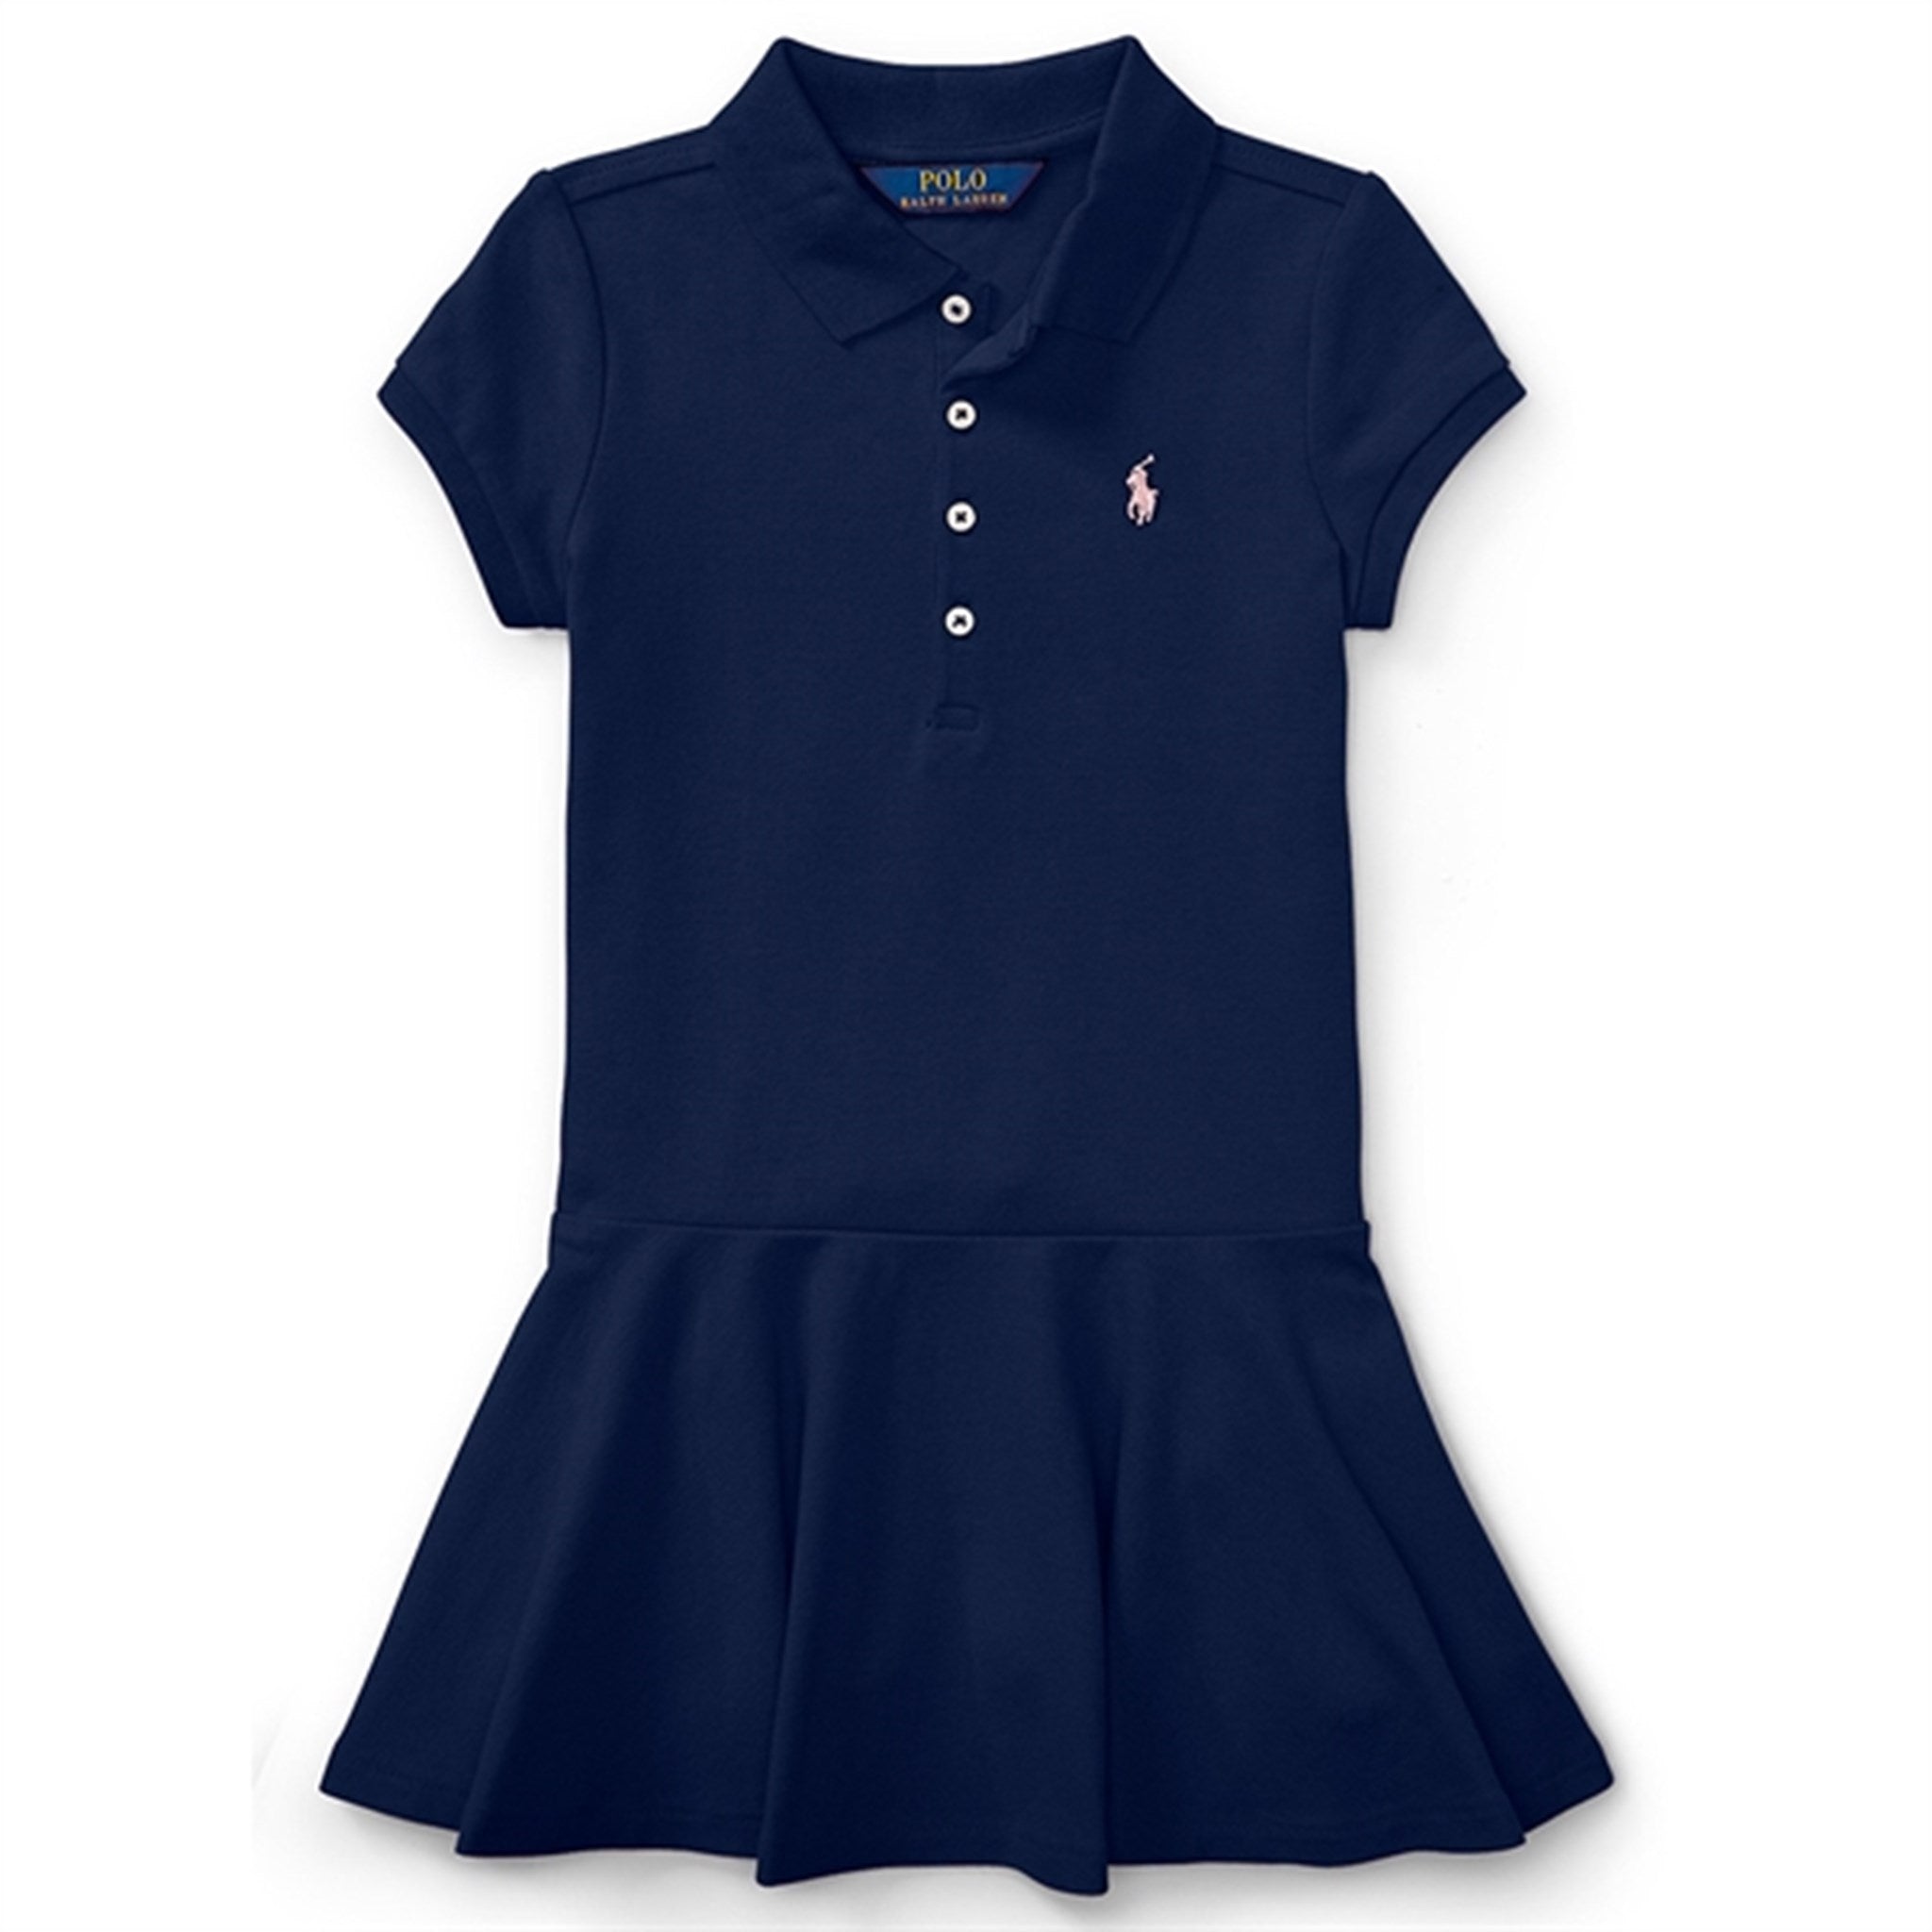 Polo Ralph Lauren Girl Kjole Refined Navy - Str. 2 år